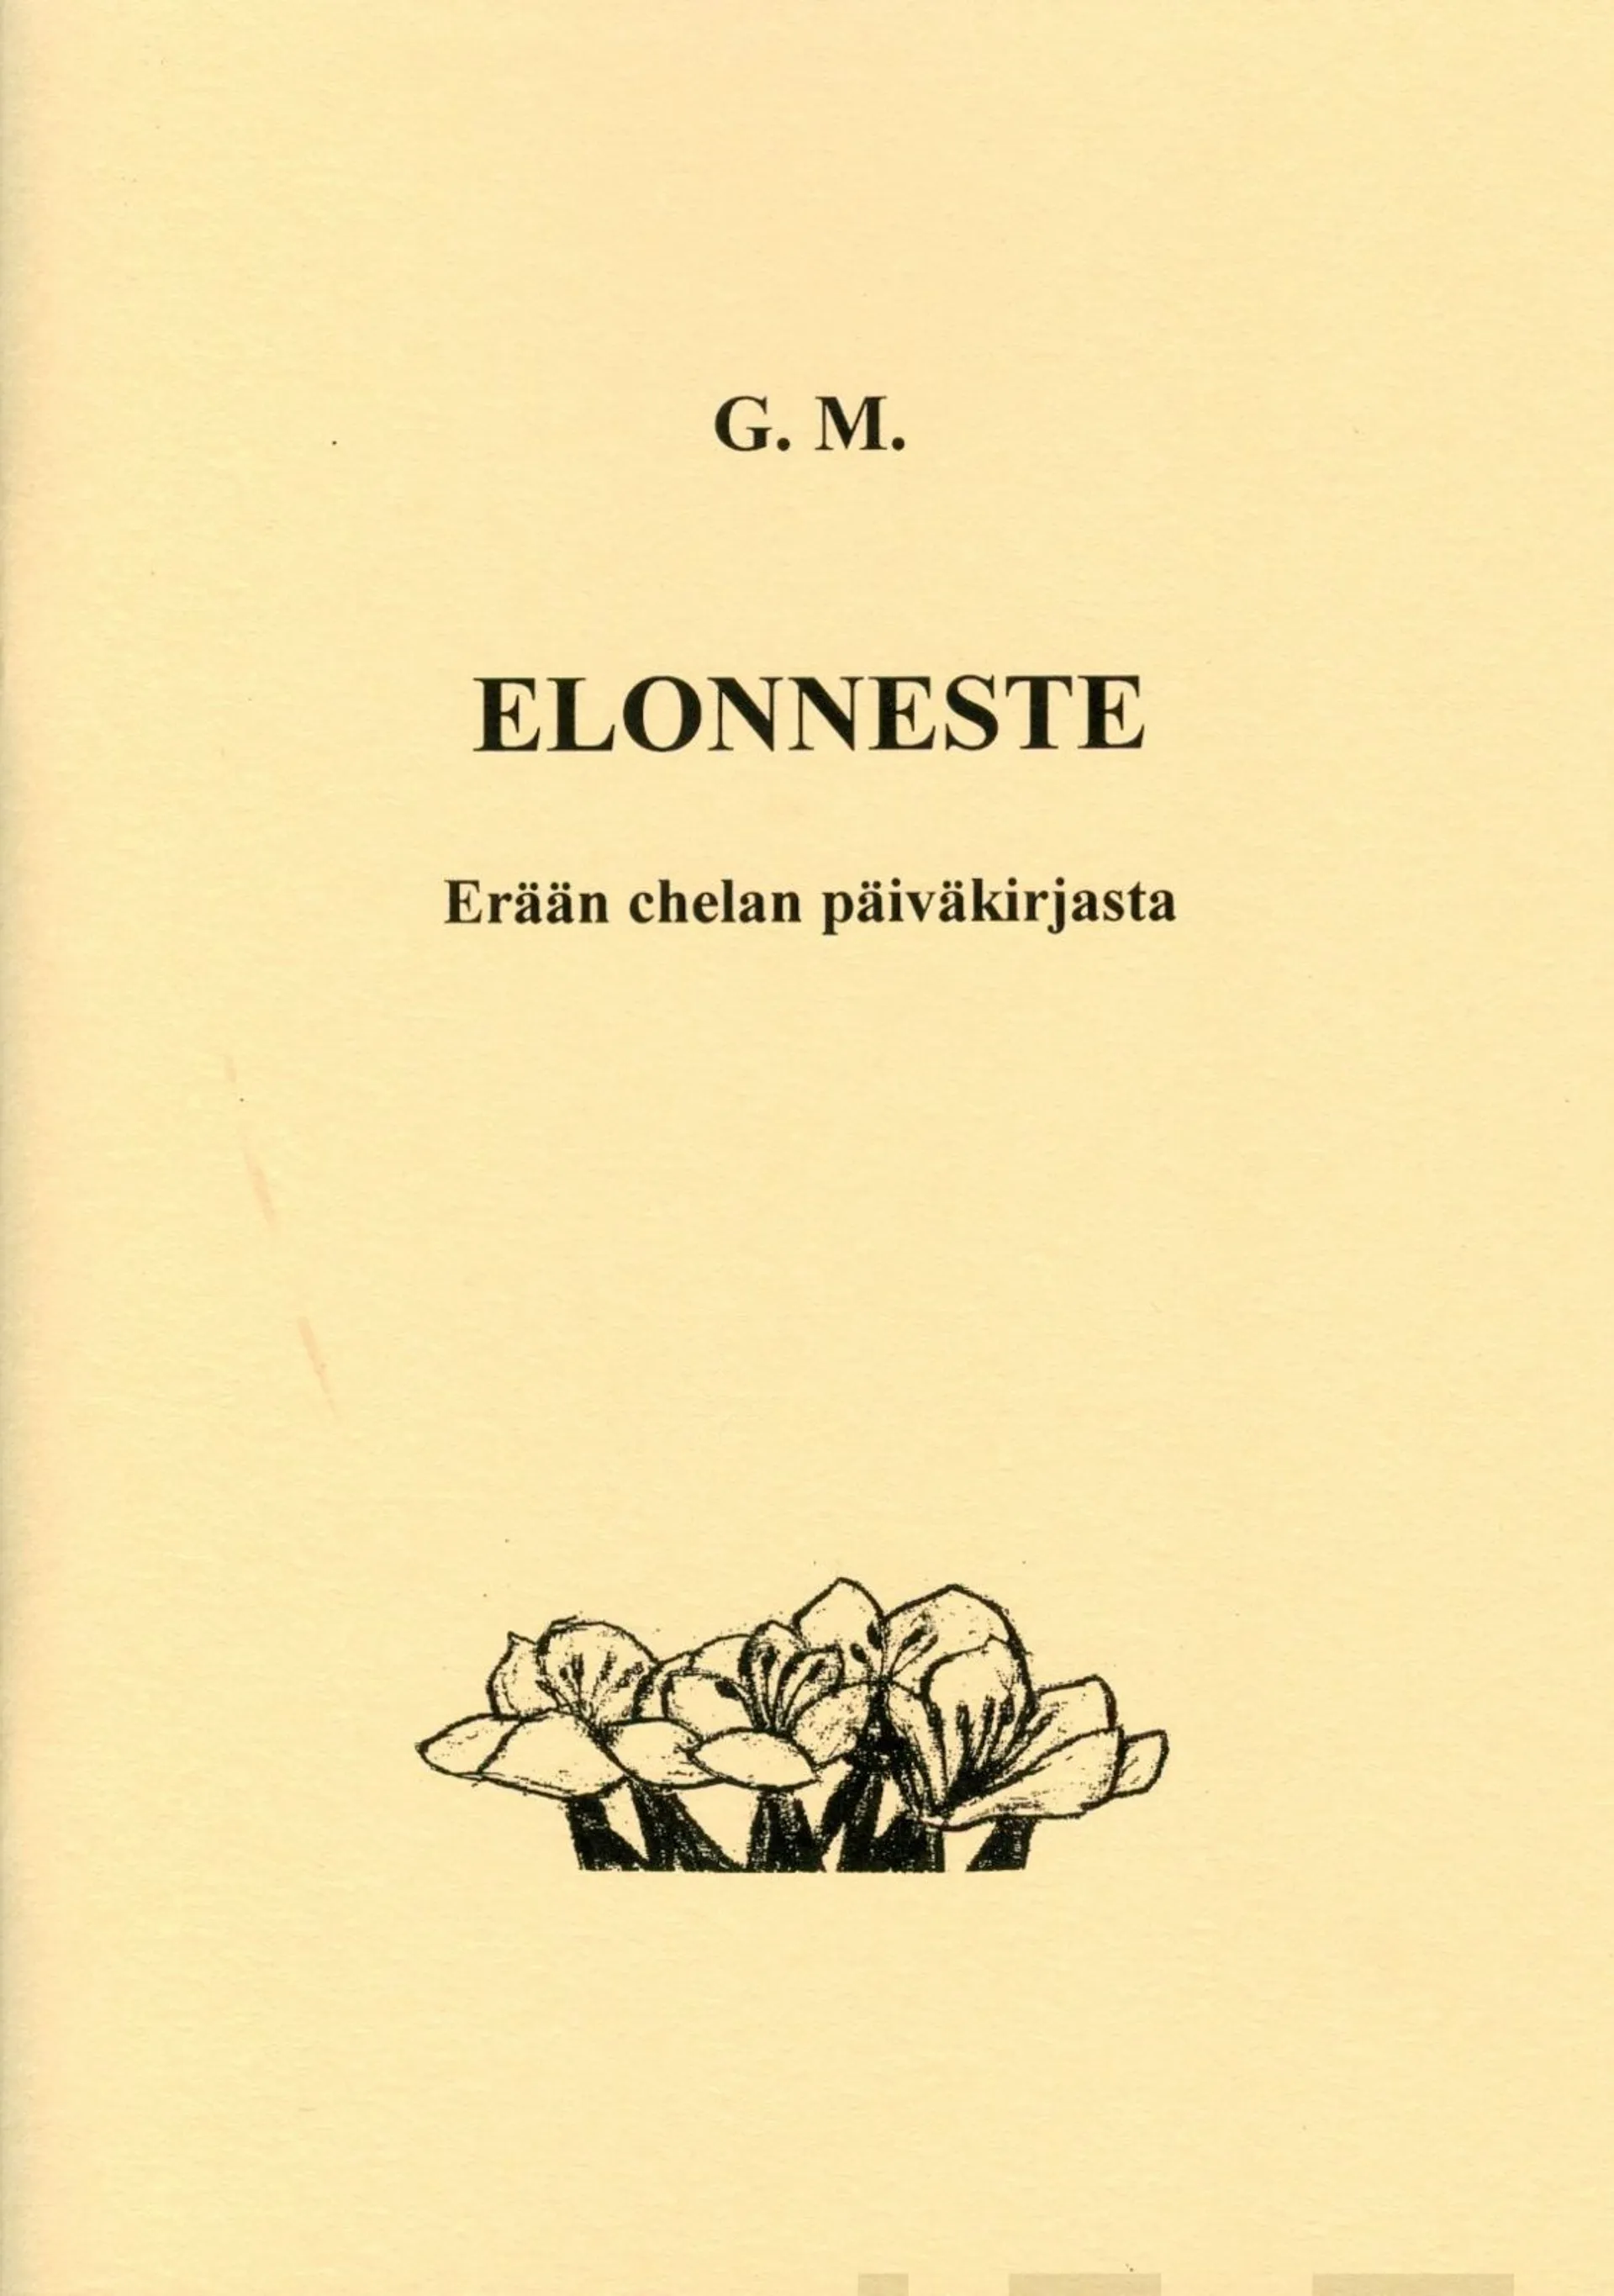 G. M., Elonneste